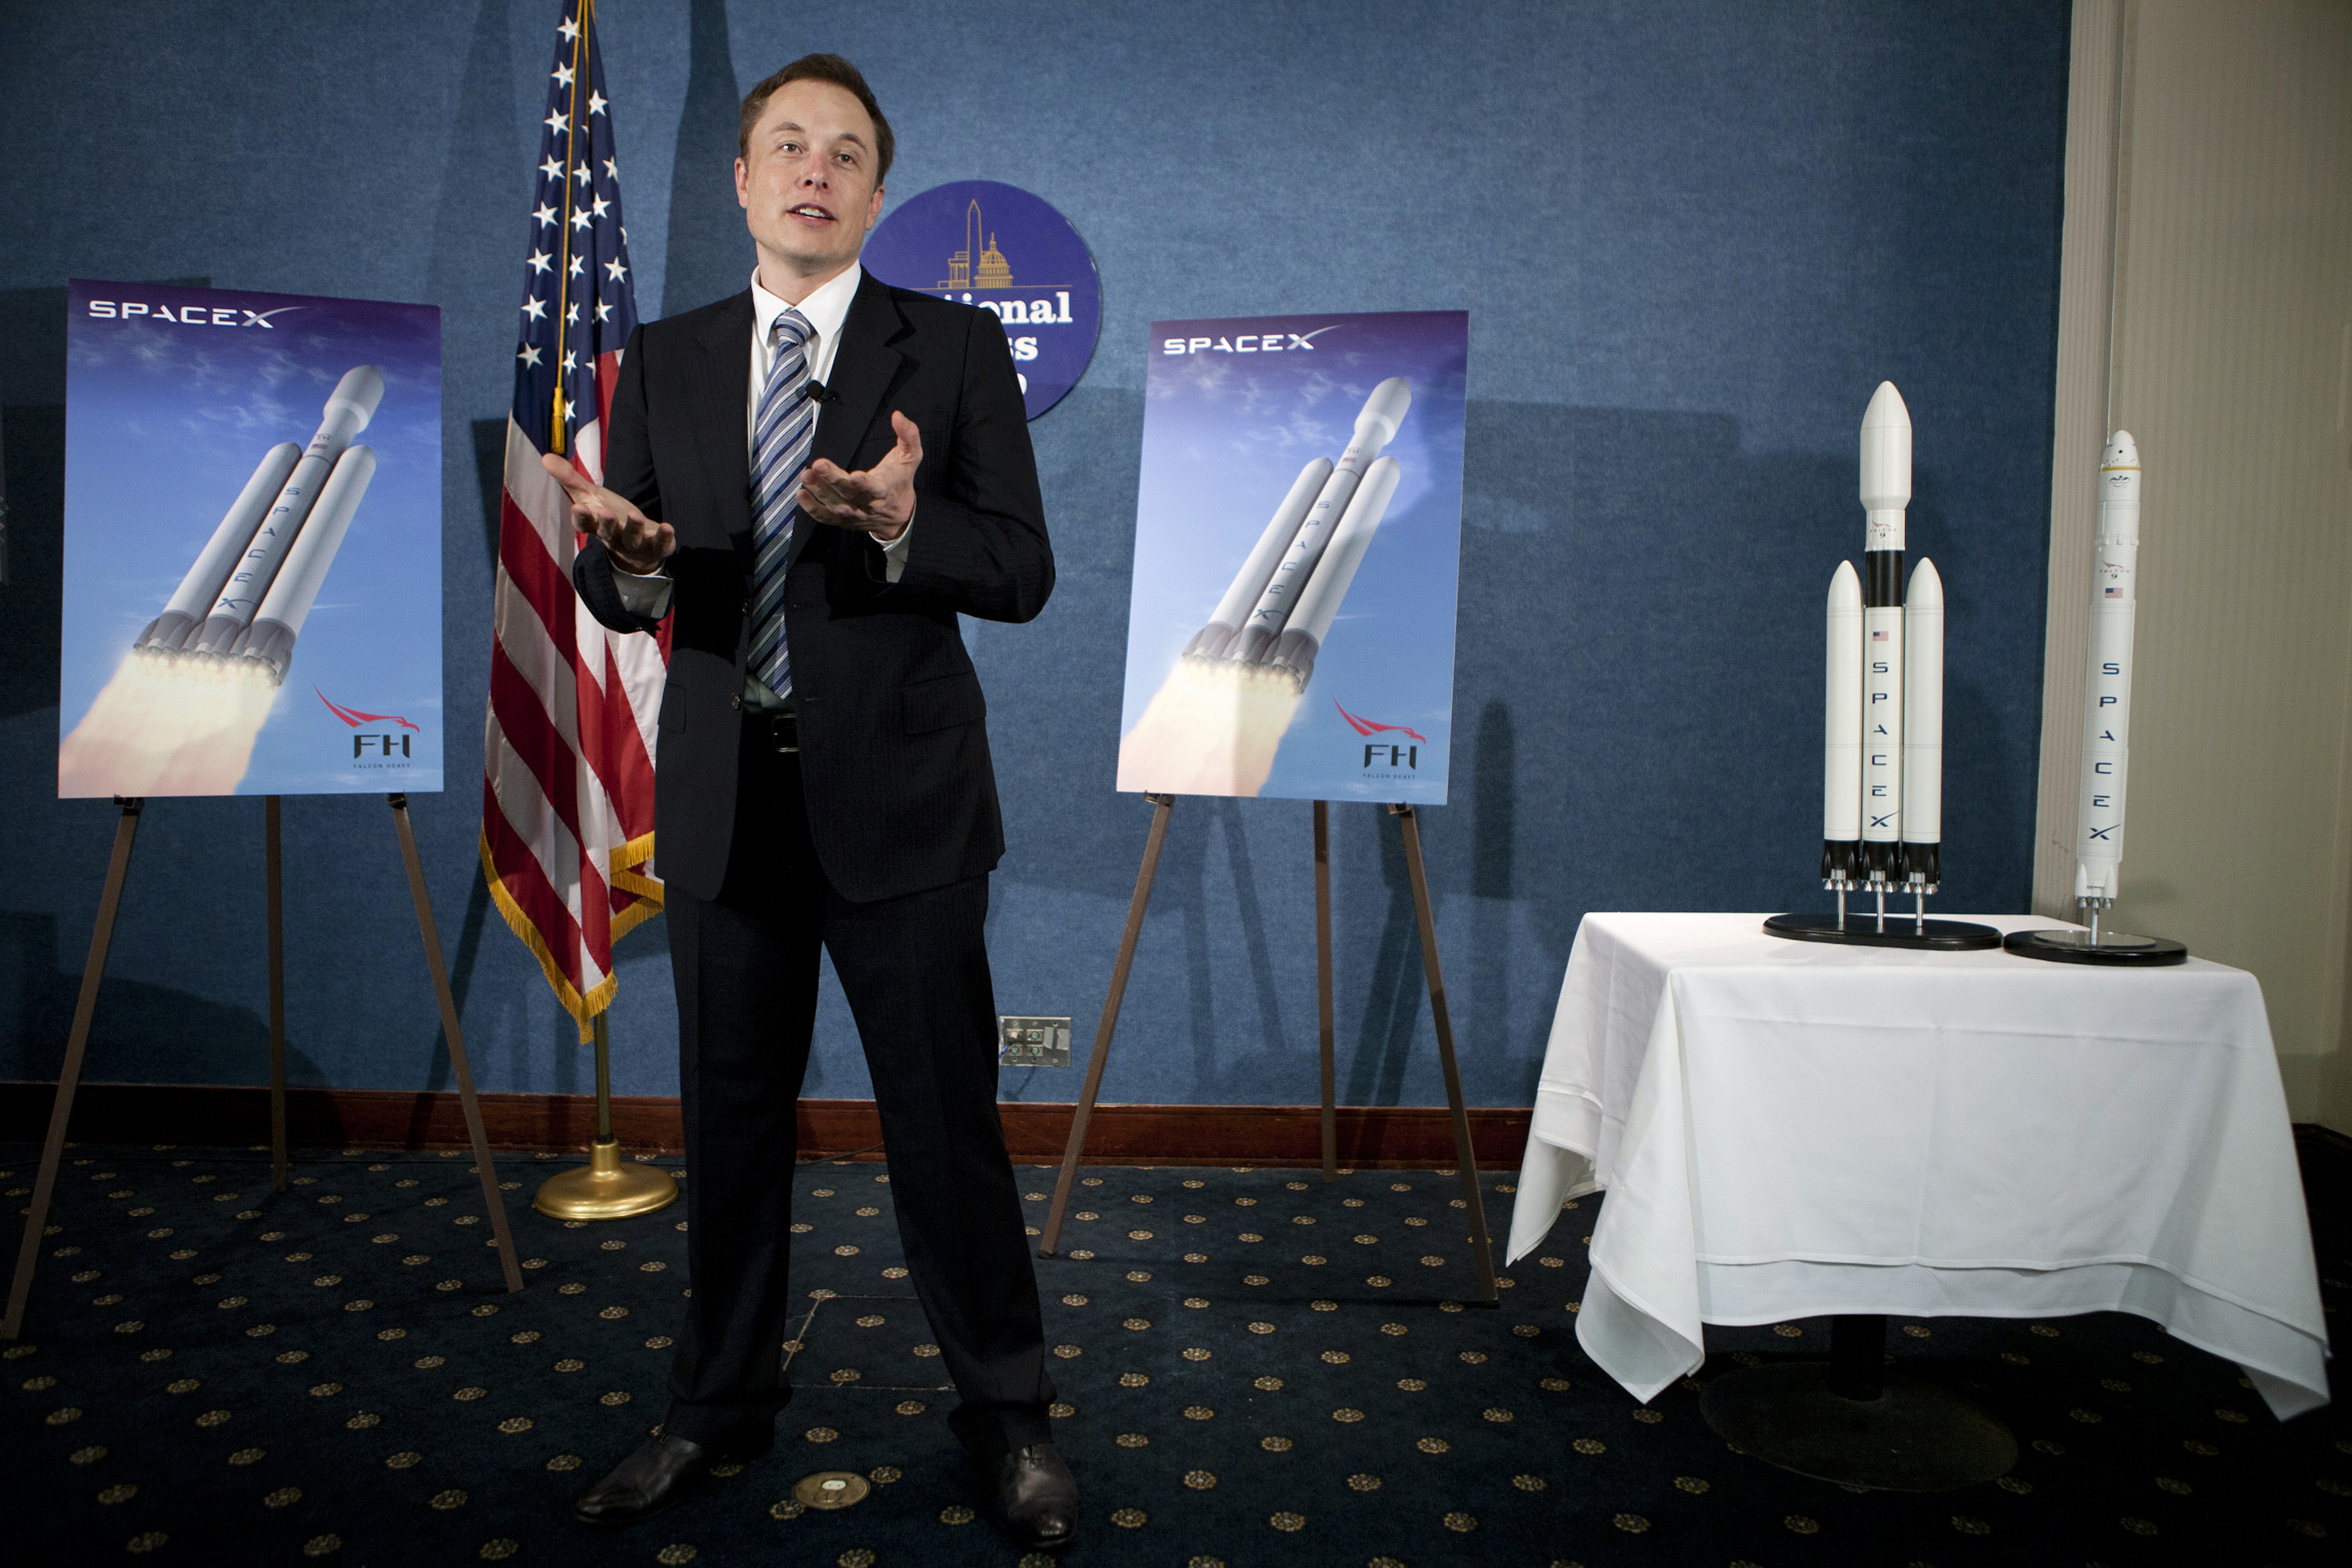  2011 年 4 月 5 日，马斯克在美国全国新闻俱乐部上首次宣布了重型猎鹰火箭的计划